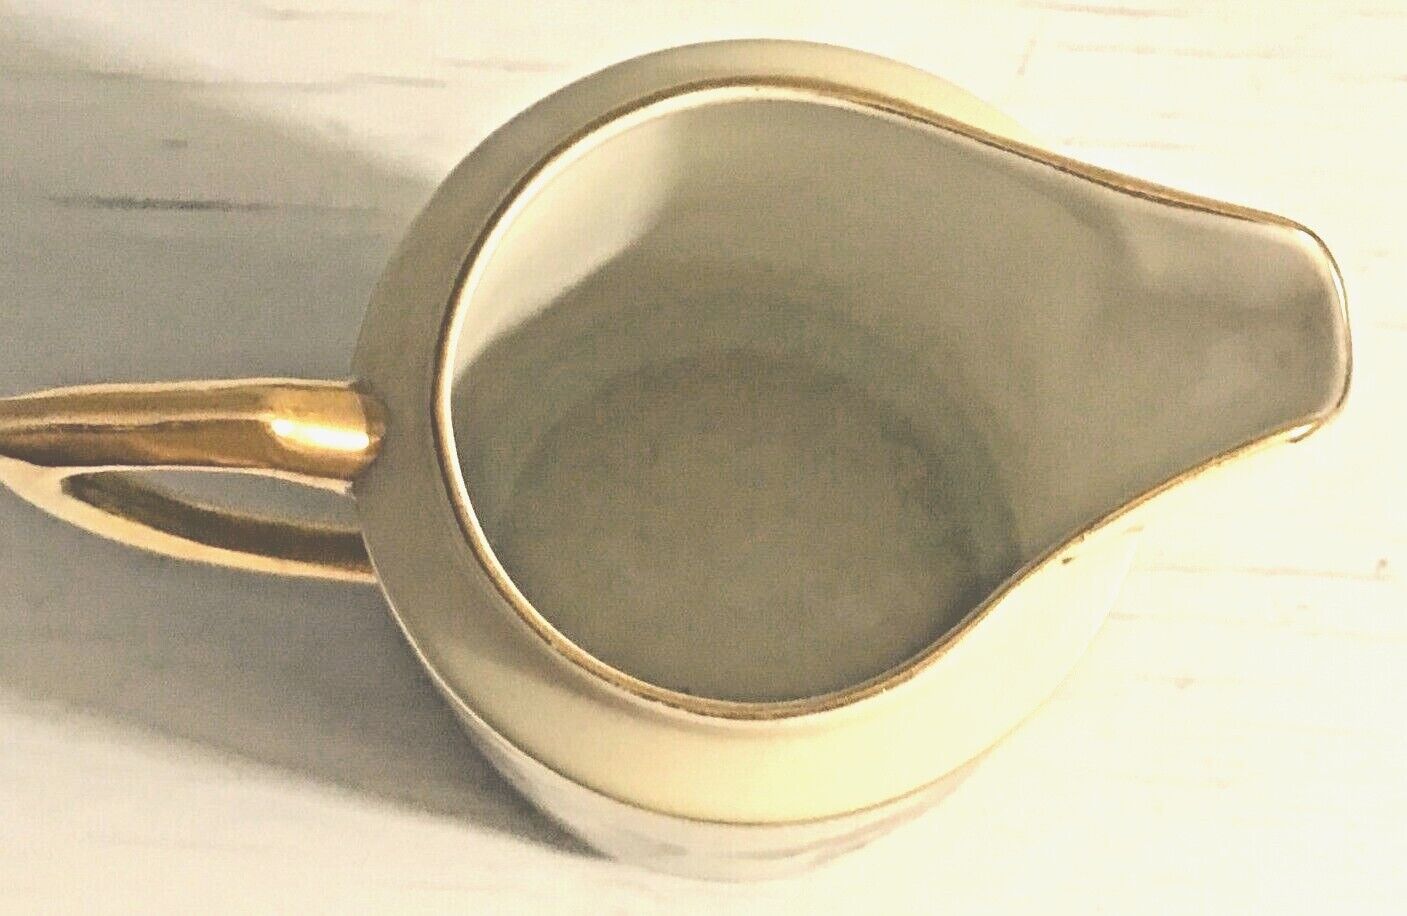 Antique Altwasser Demitasse Chocolate Espresso Set of  5 Cups Saucers Sugar Crmr Altwasser - фотография #3